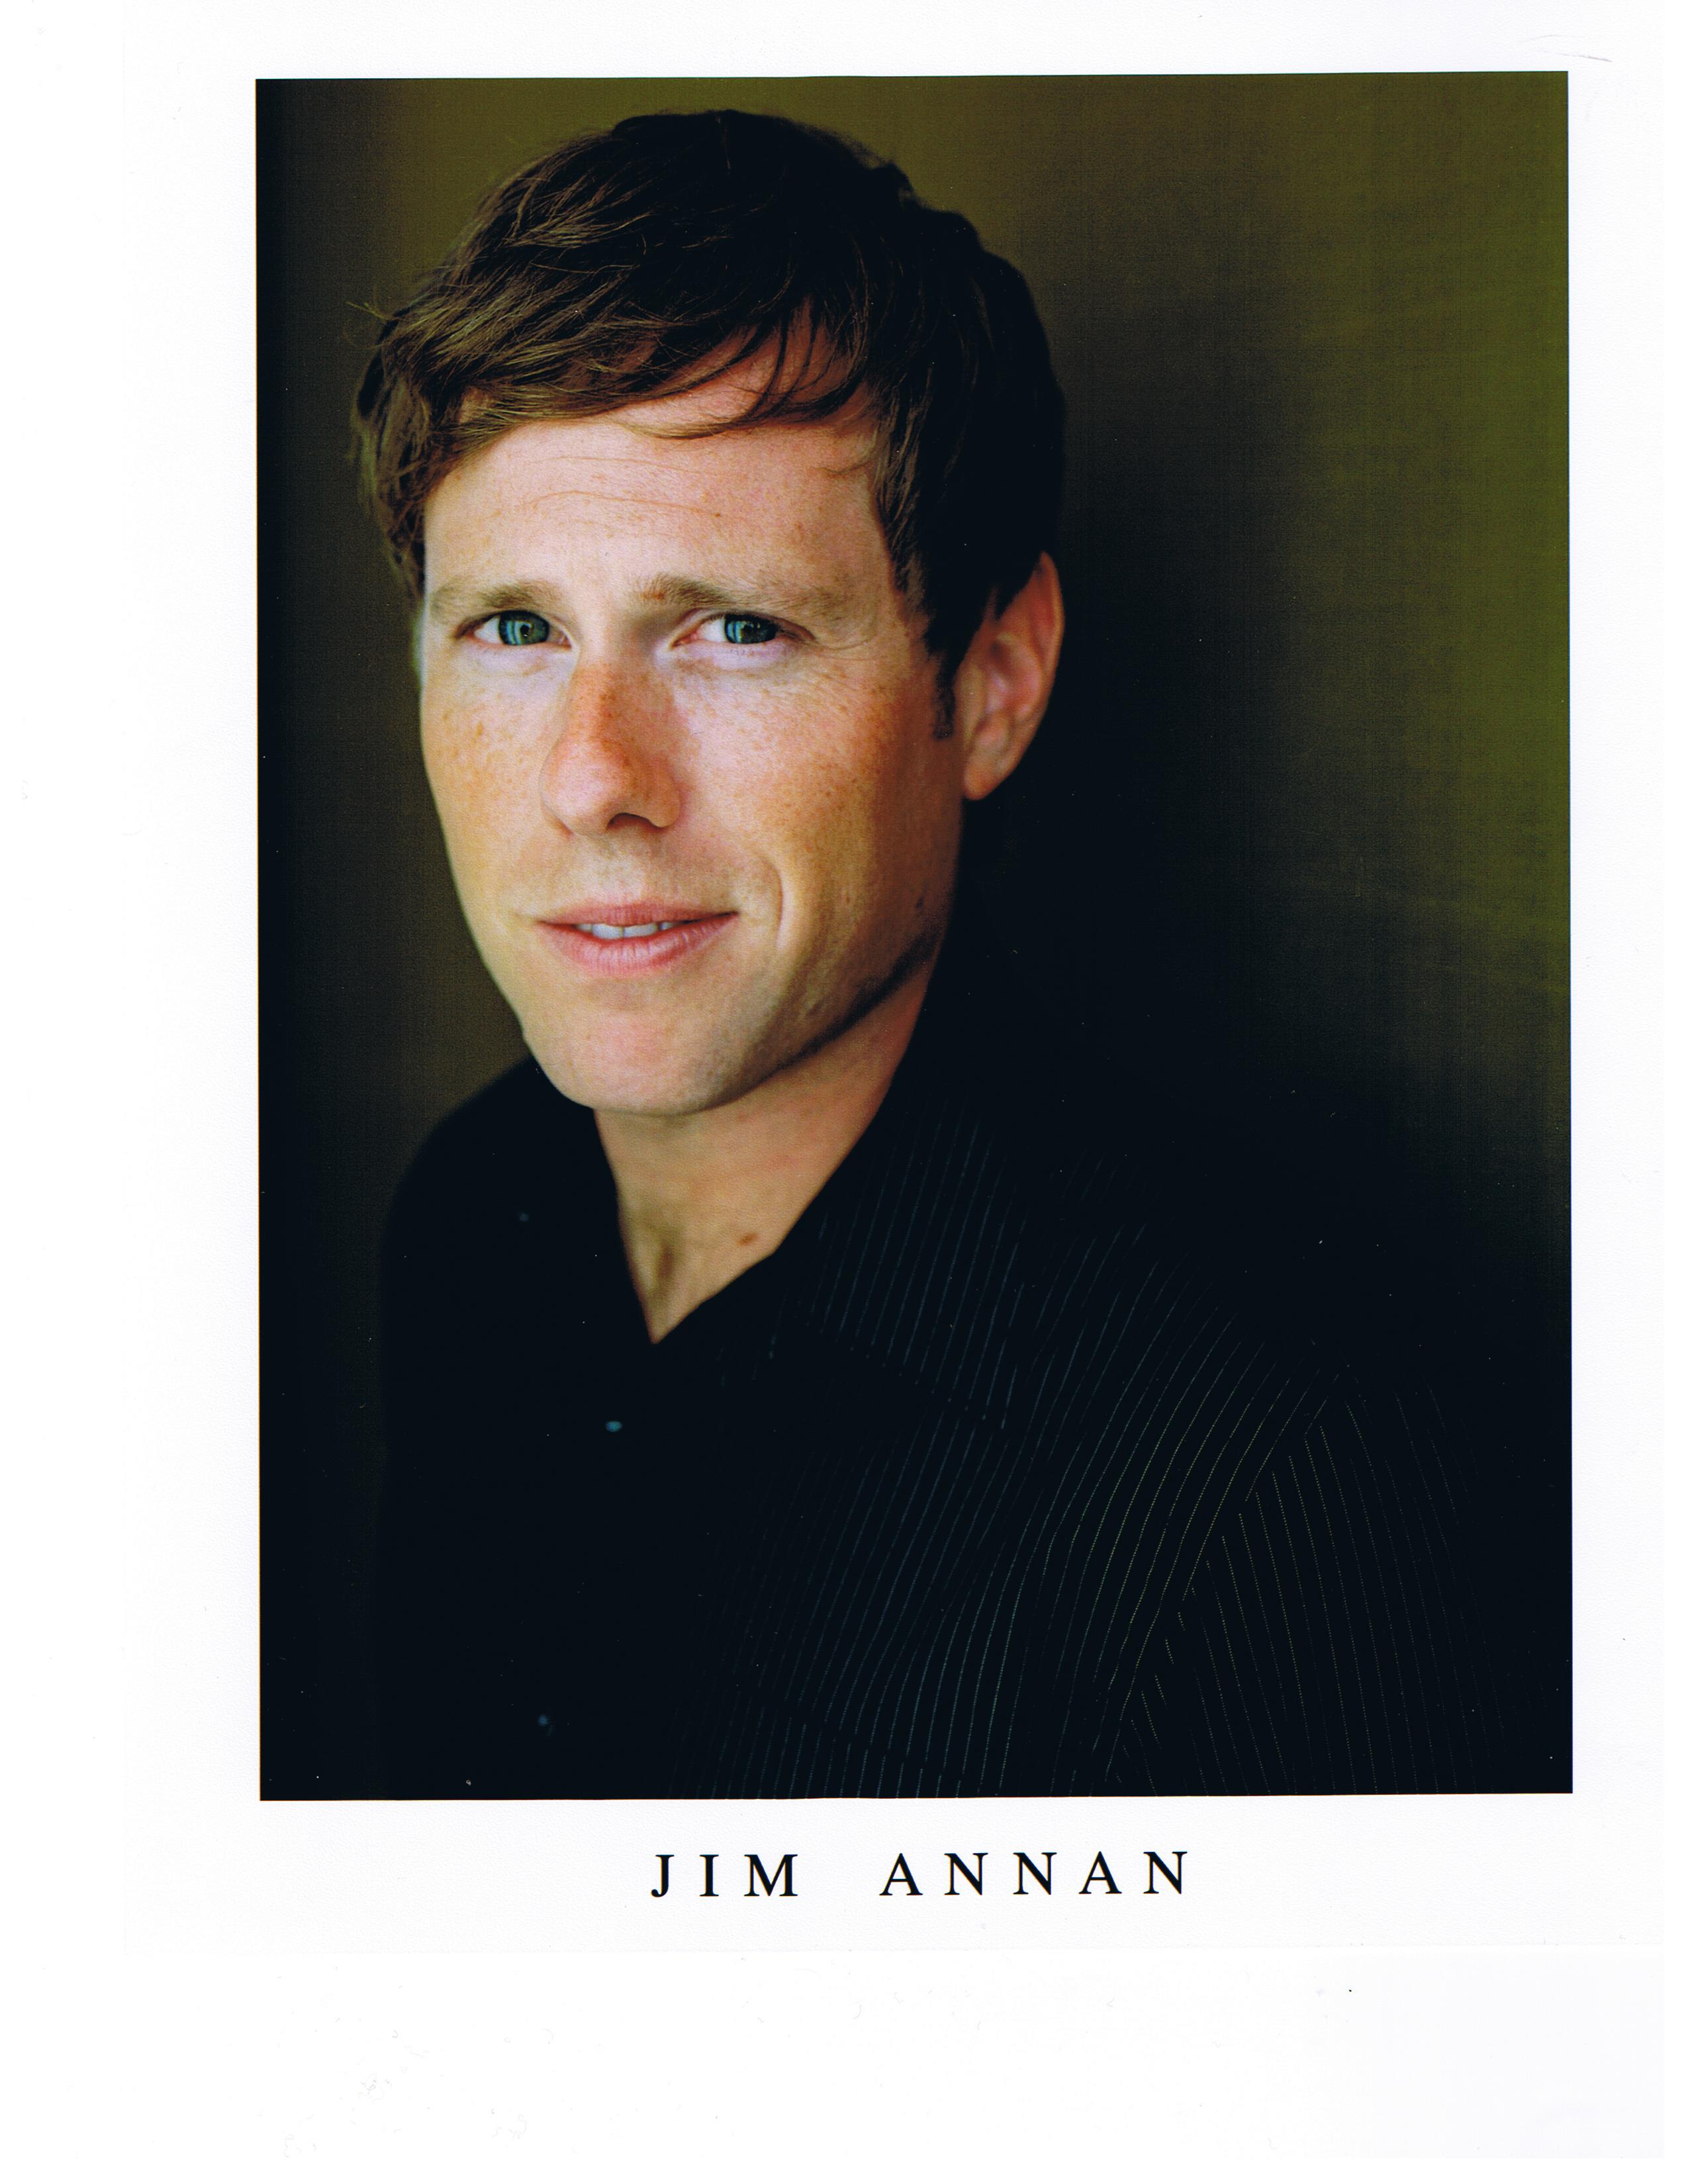 Jim Annan